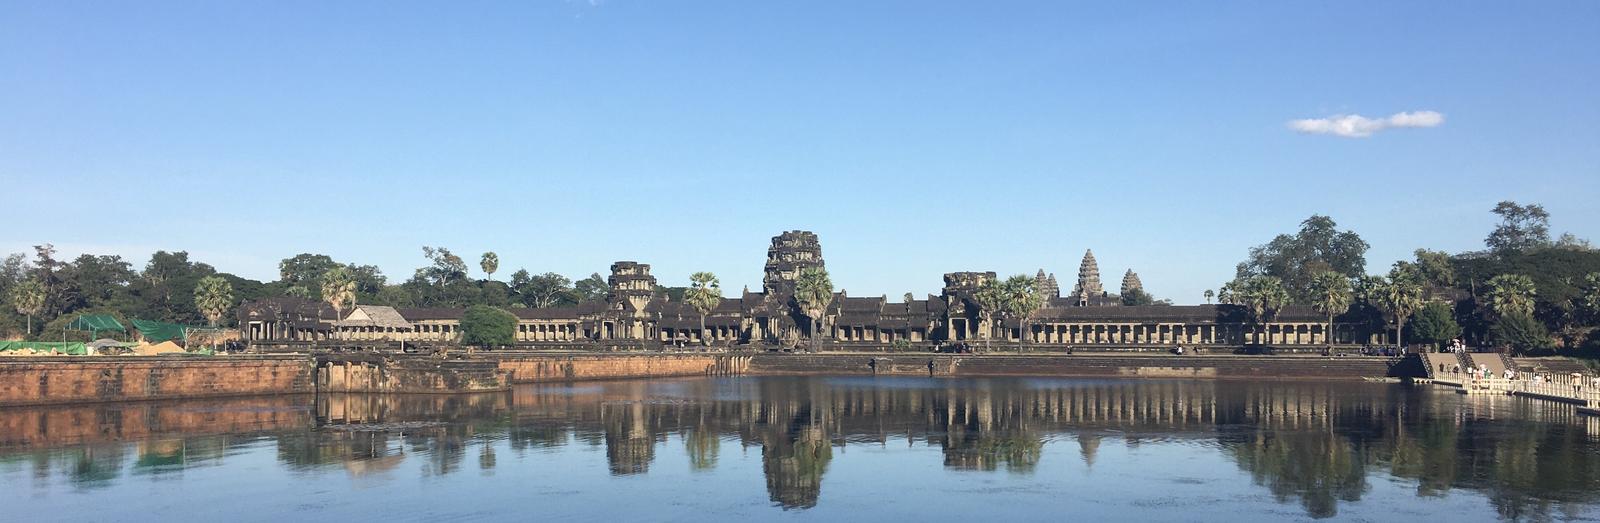 temple d'angkor cambodge lac